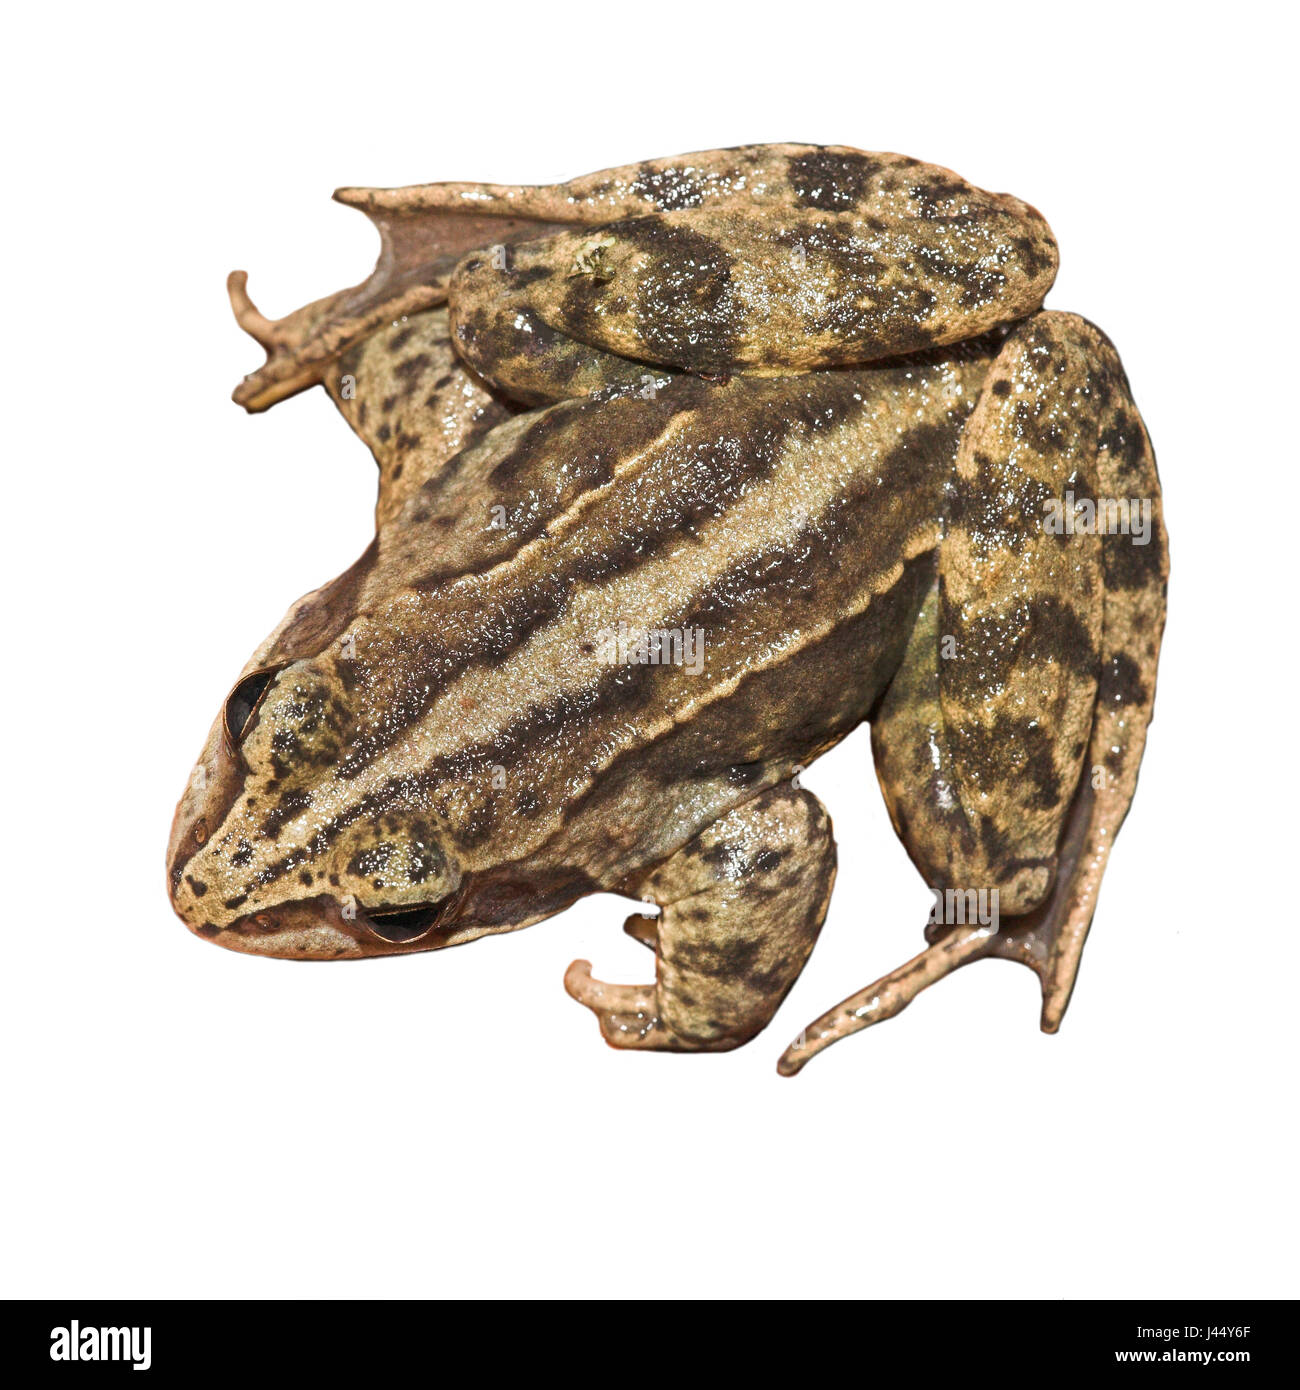 Vista dorsale di una rana di moro con la sua striscia dorsale ben visibile (resi Foto Stock